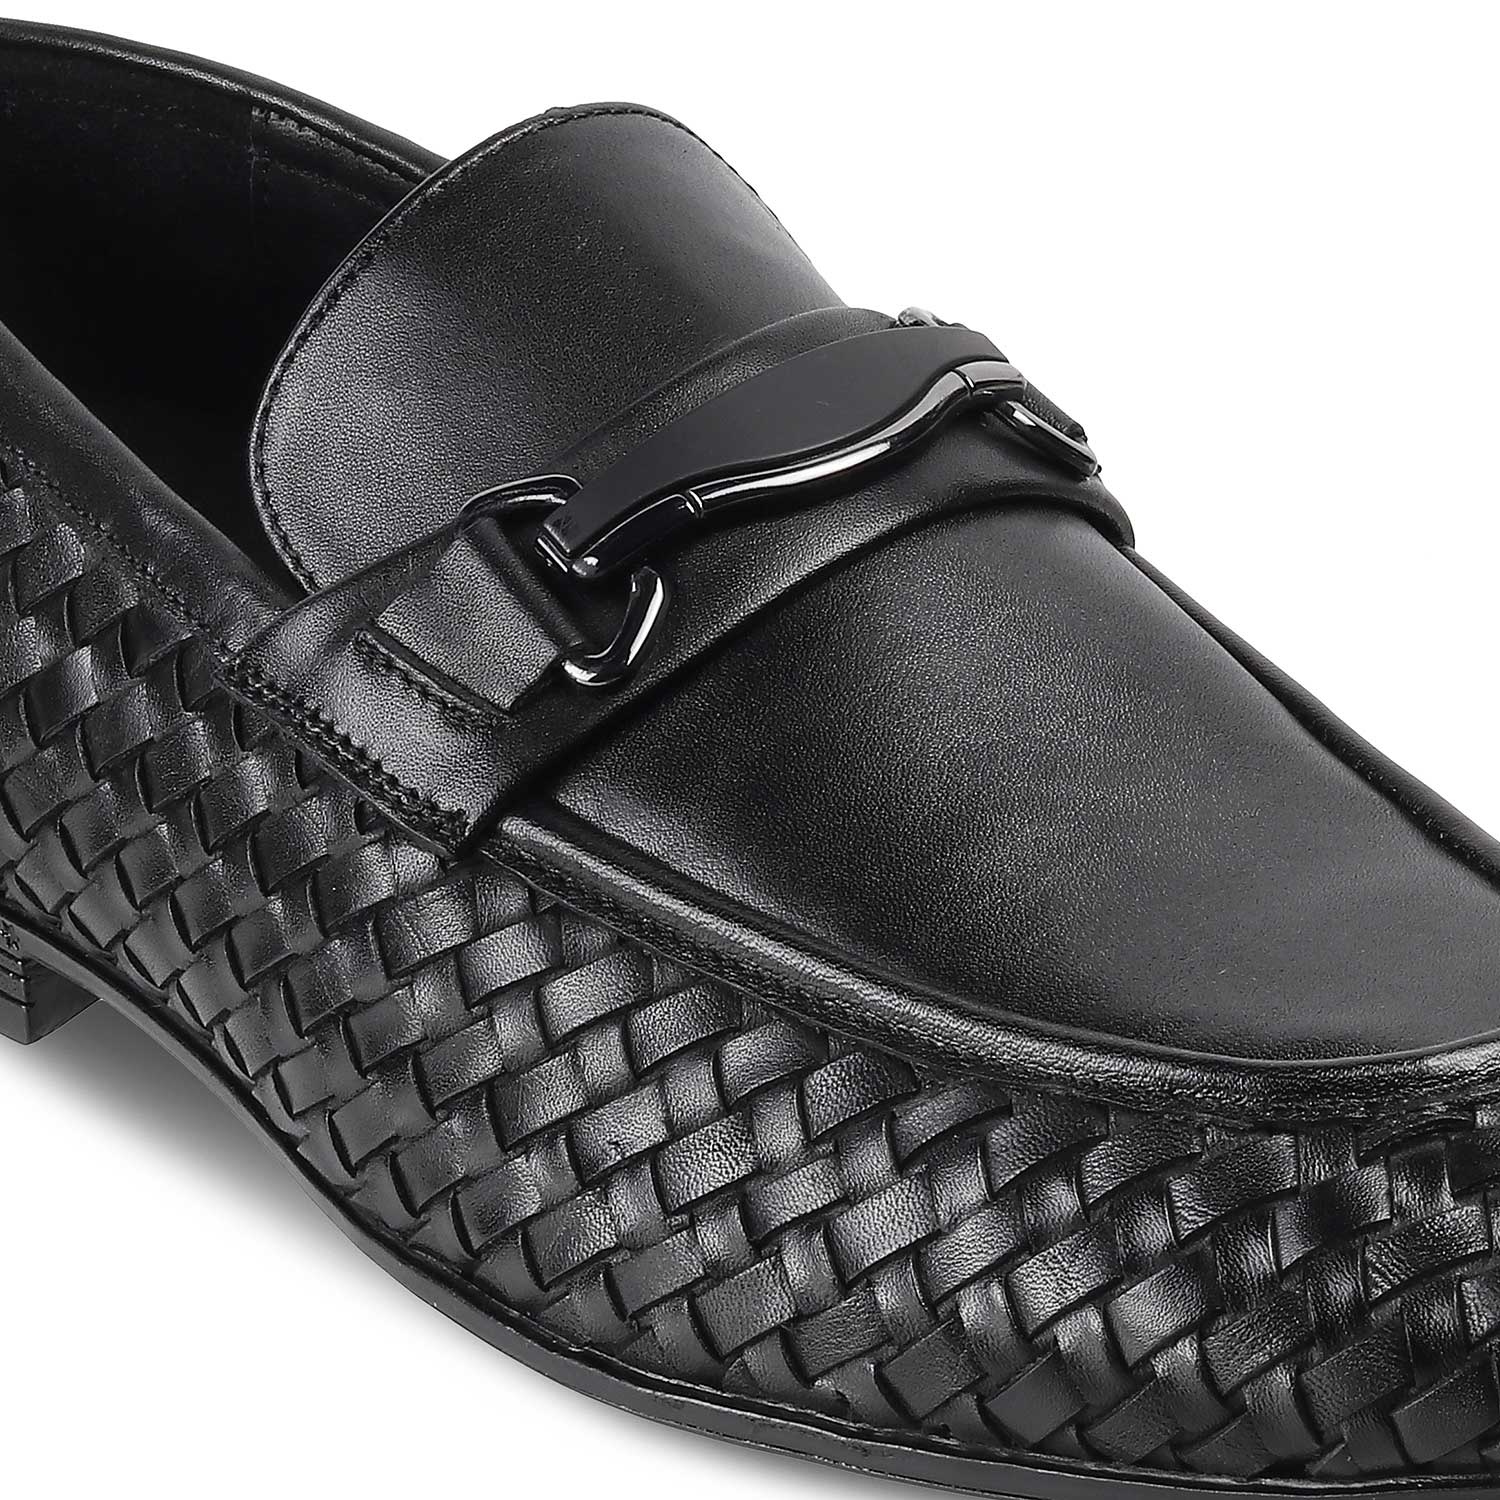 Tridney Black Men's Leather Loafers Online at Tresmode